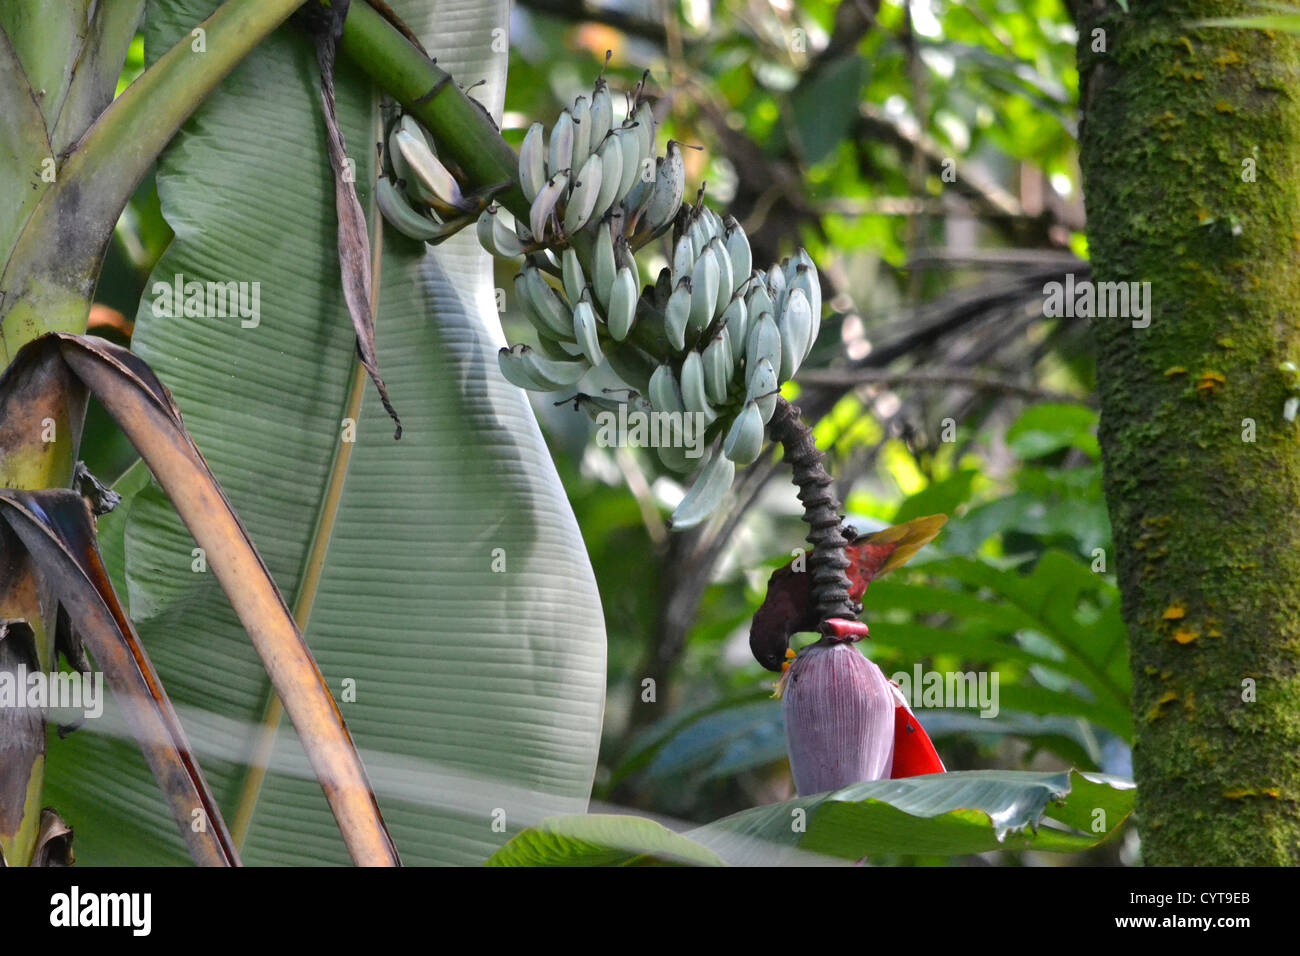 Pohnpei Lorikeet (specie endemiche), Trichoglossus rubiginosus, mangia fuori da un albero di banana, Pohnpei, Stati Federati di Micronesia Foto Stock